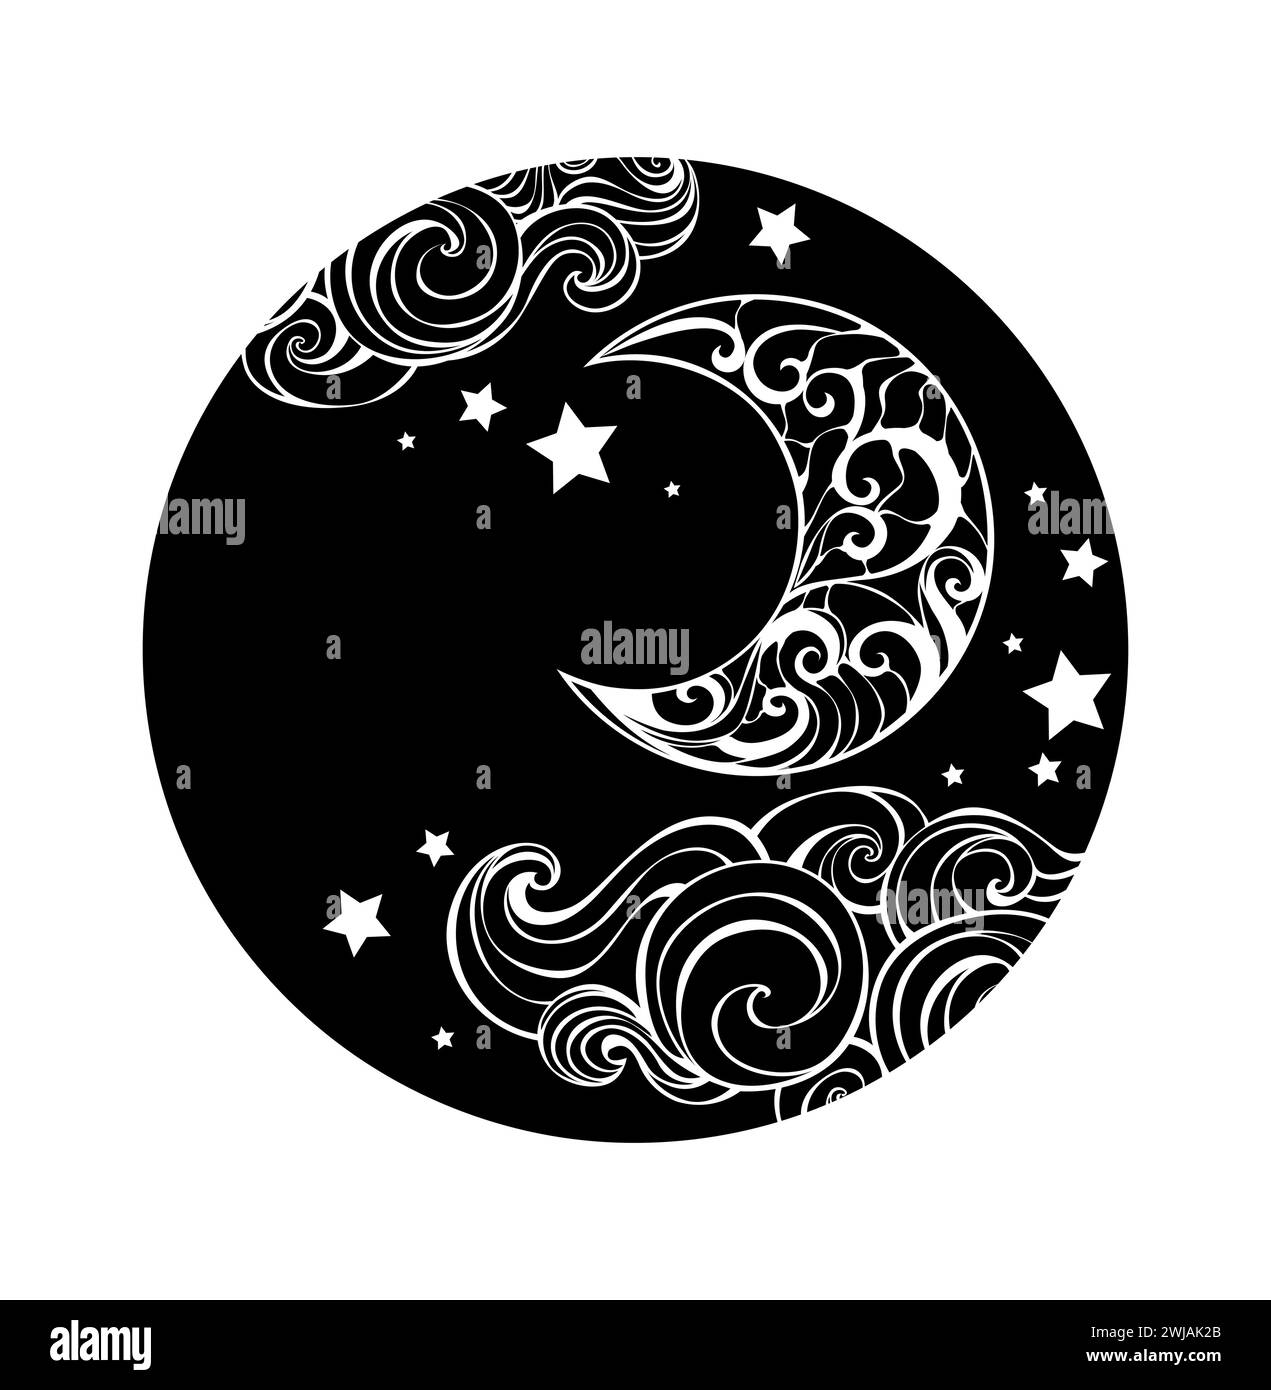 Forma rotonda, silhouette, monogramma con mezzaluna disegnata artisticamente, nuvole e stelle su sfondo bianco. Mezzaluna a ripetizione. Illustrazione Vettoriale